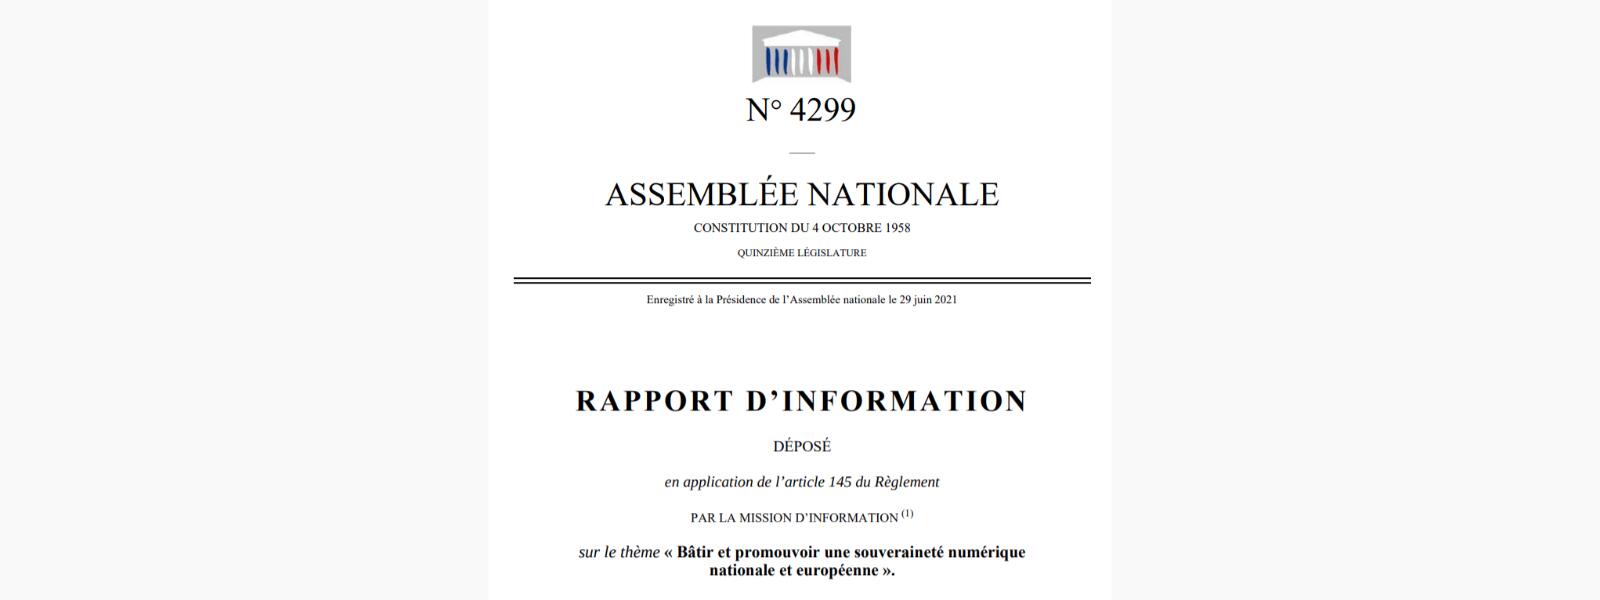 A misión parlamentaria francesa apoia o software libre